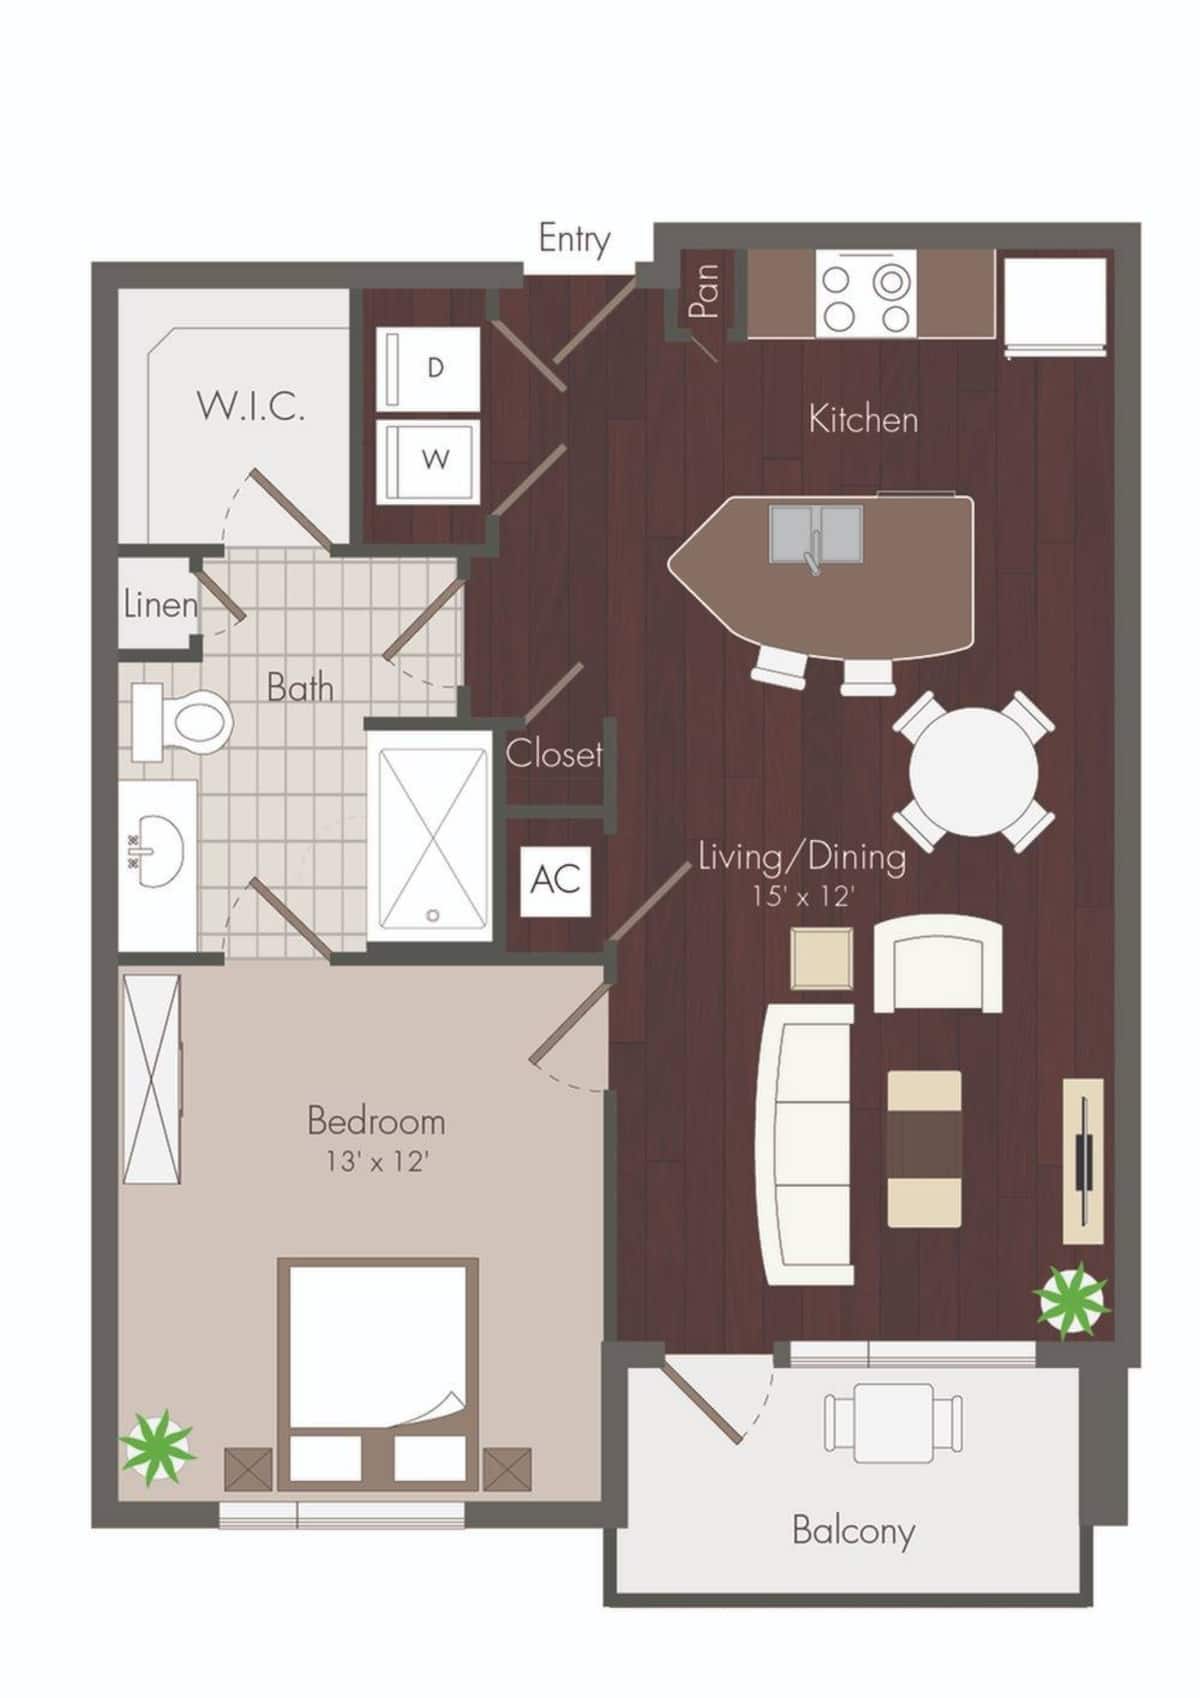 Floorplan diagram for Clyde, showing 1 bedroom